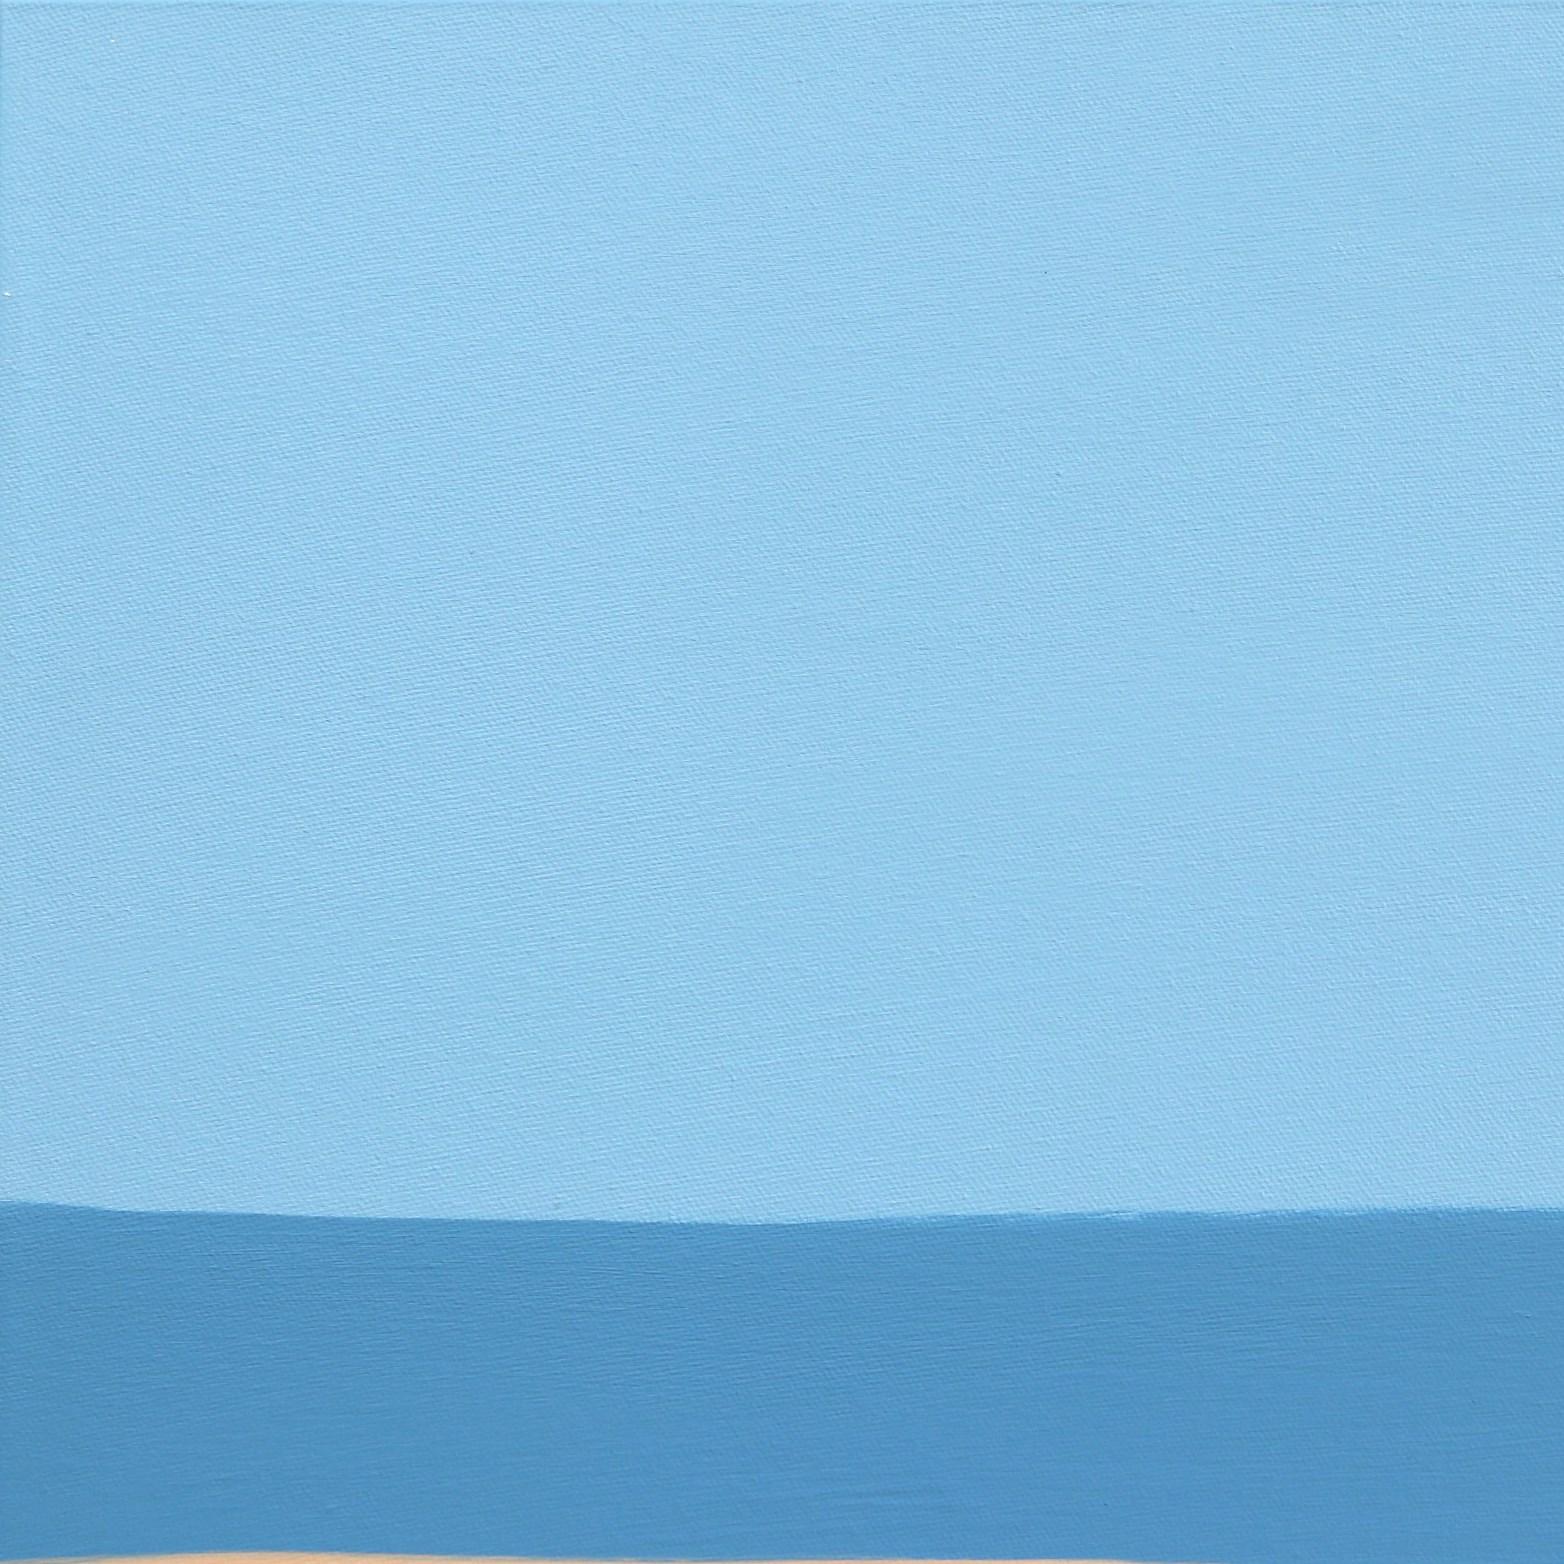 The Counting the Days - Tranquille peinture abstraite colorée bleu et Brown - Abstrait Painting par Julie Naima